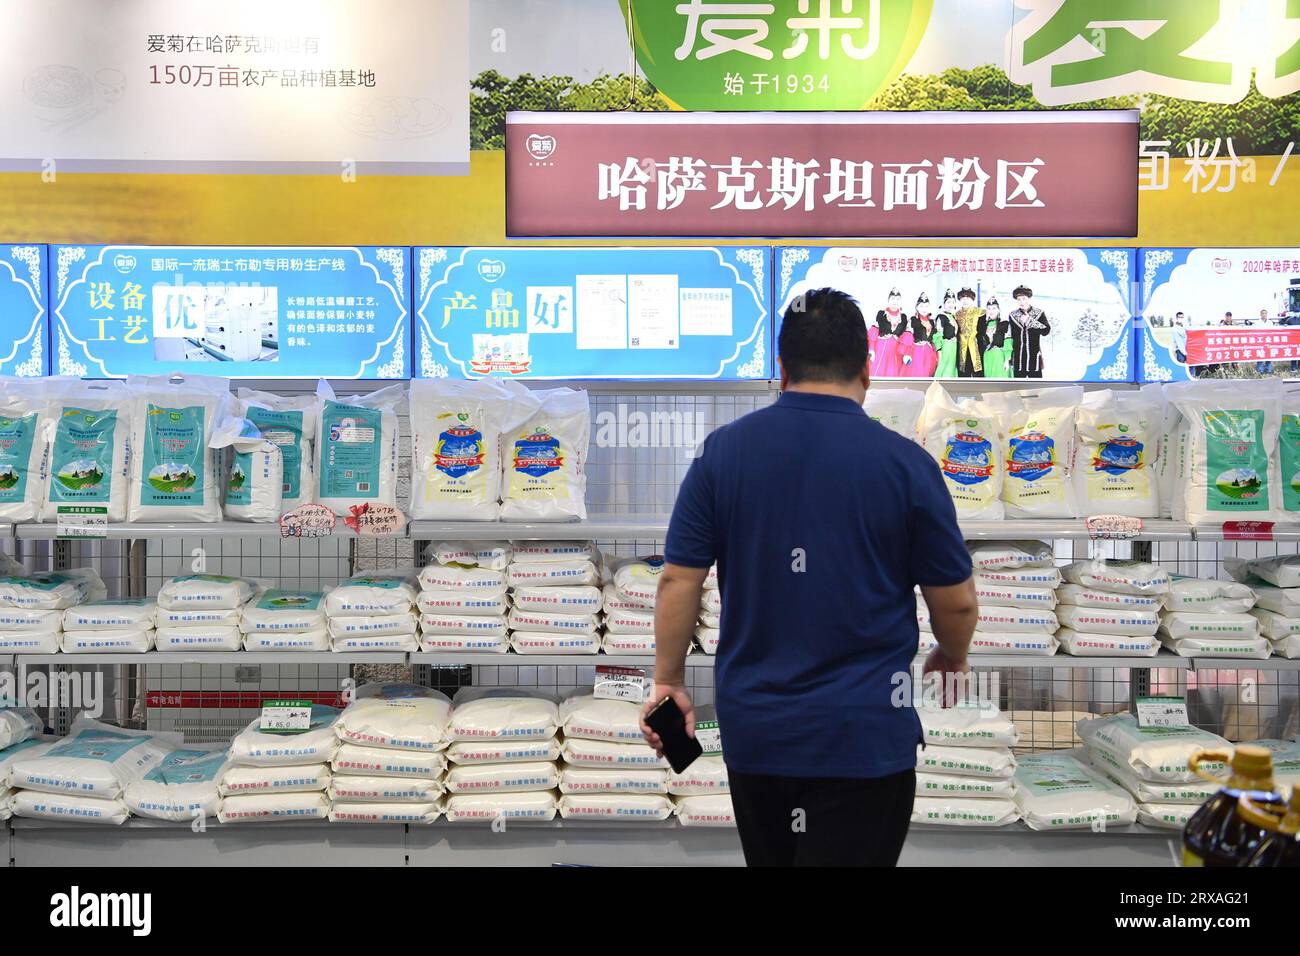 (230924) -- XI'AN, 24 septembre 2023 (Xinhua) -- Un client regarde de la farine importée transportée de l'étranger via les trains de marchandises Chine-Europe de Chang'an dans un supermarché près du port international de Xi'an à Xi'an, dans la province du Shaanxi, au nord-ouest de la Chine, le 22 septembre 2023. Le service de train de marchandises Chine-Europe de Chang'an a été lancé en 2013, lorsque la Chine a proposé l'initiative Belt and Road. Au cours des dix dernières années, le port international de Xi'an, la station de départ des trains de fret Chang'an Chine-Europe, a été développé d'une petite station de fret à un centre logistique international. (Xinhua/Shao Rui) Banque D'Images